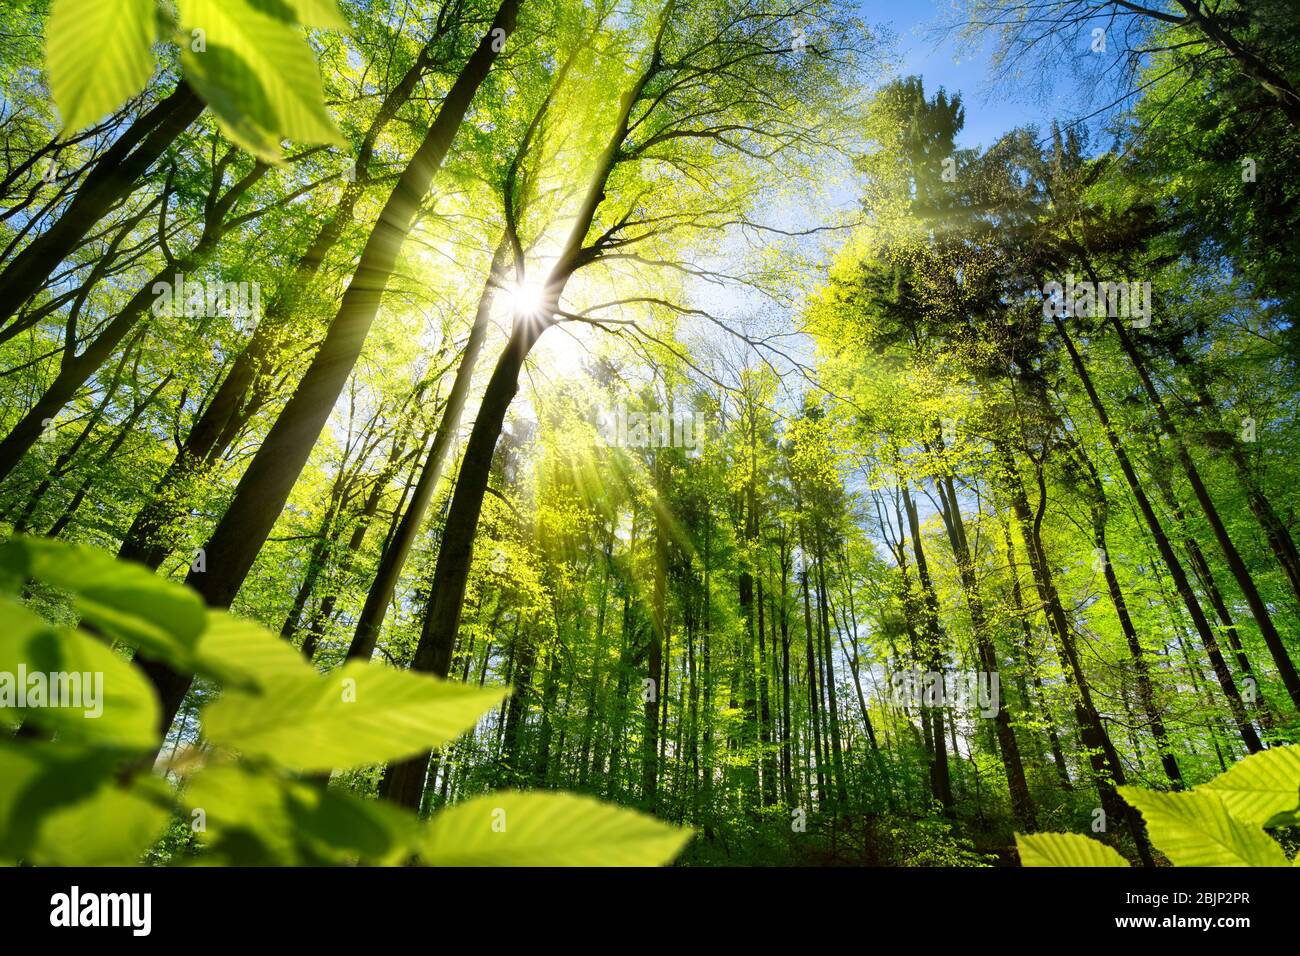 Malerischen Wald von frischen grünen Laubbäumen umrahmt von Blätter, mit der Sonne Gießen ihre warmen Strahlen durch das Laub Stockfoto